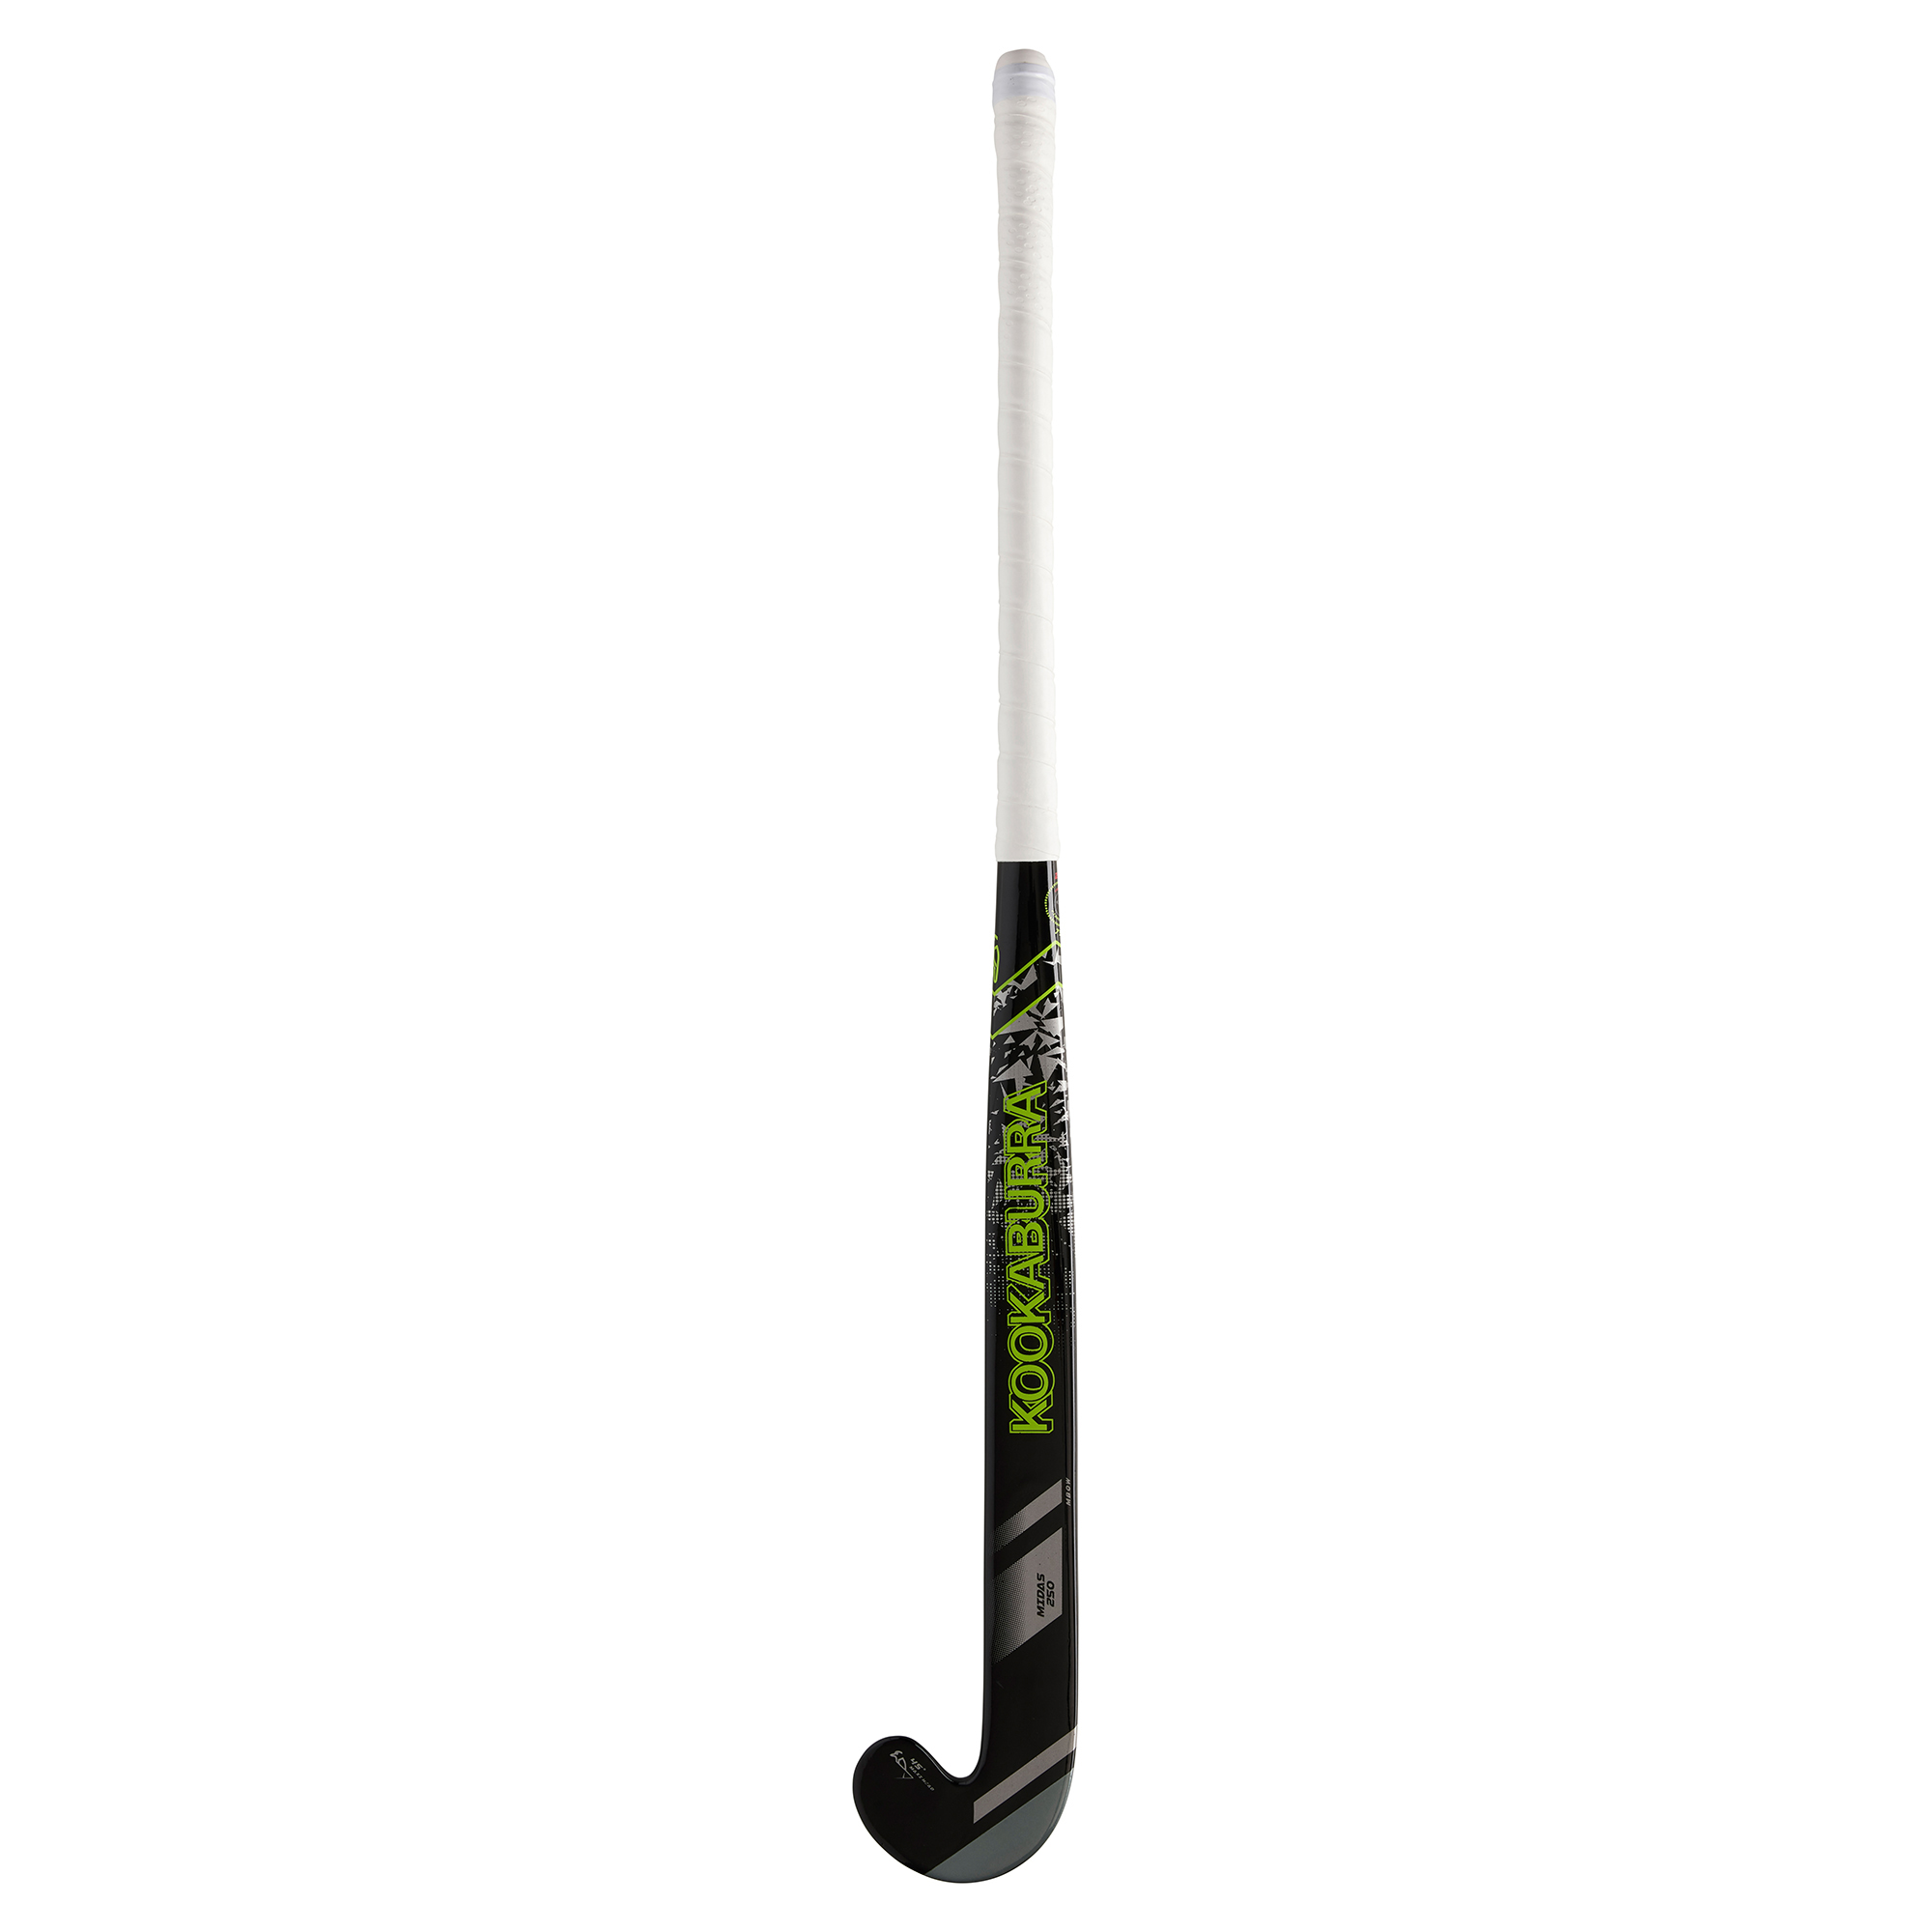 Kookaburra Midas 250 Mid-Bow Hockey Stick